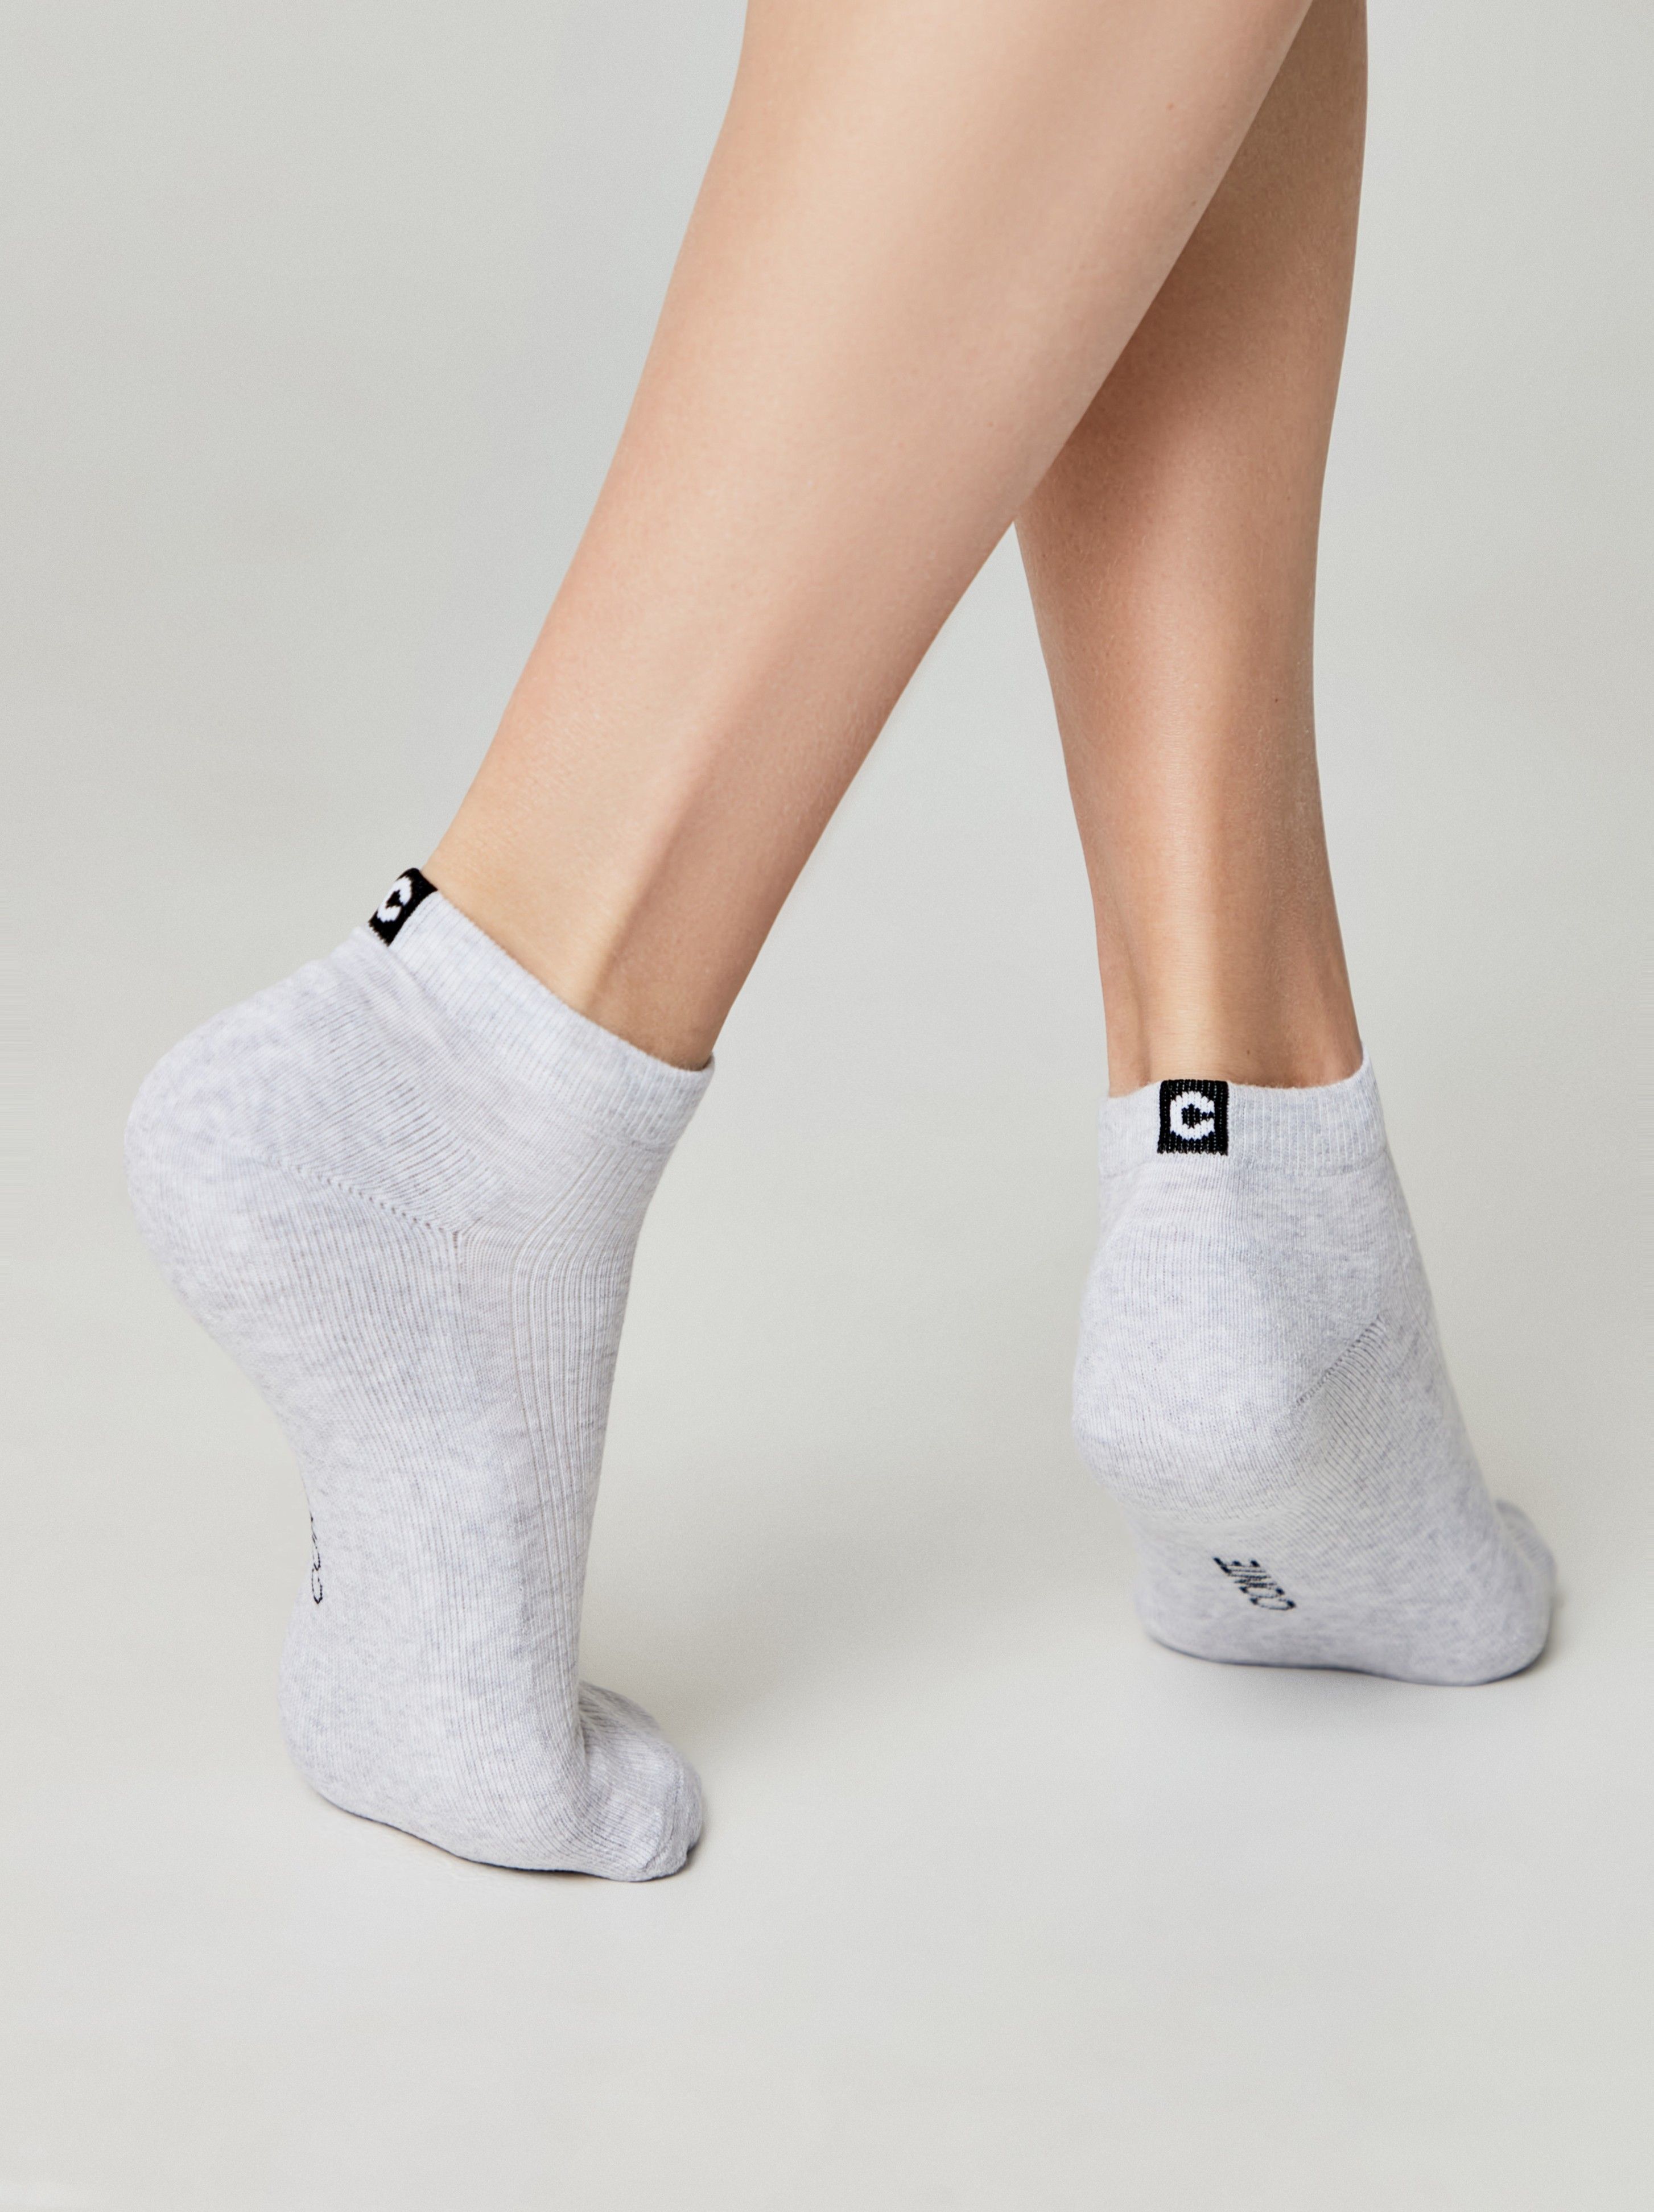 Короткие носки из хлопка с махровой стопой и отсылкой к логотипу бренда Conte ⭐️, цвет черный, размер 36-37